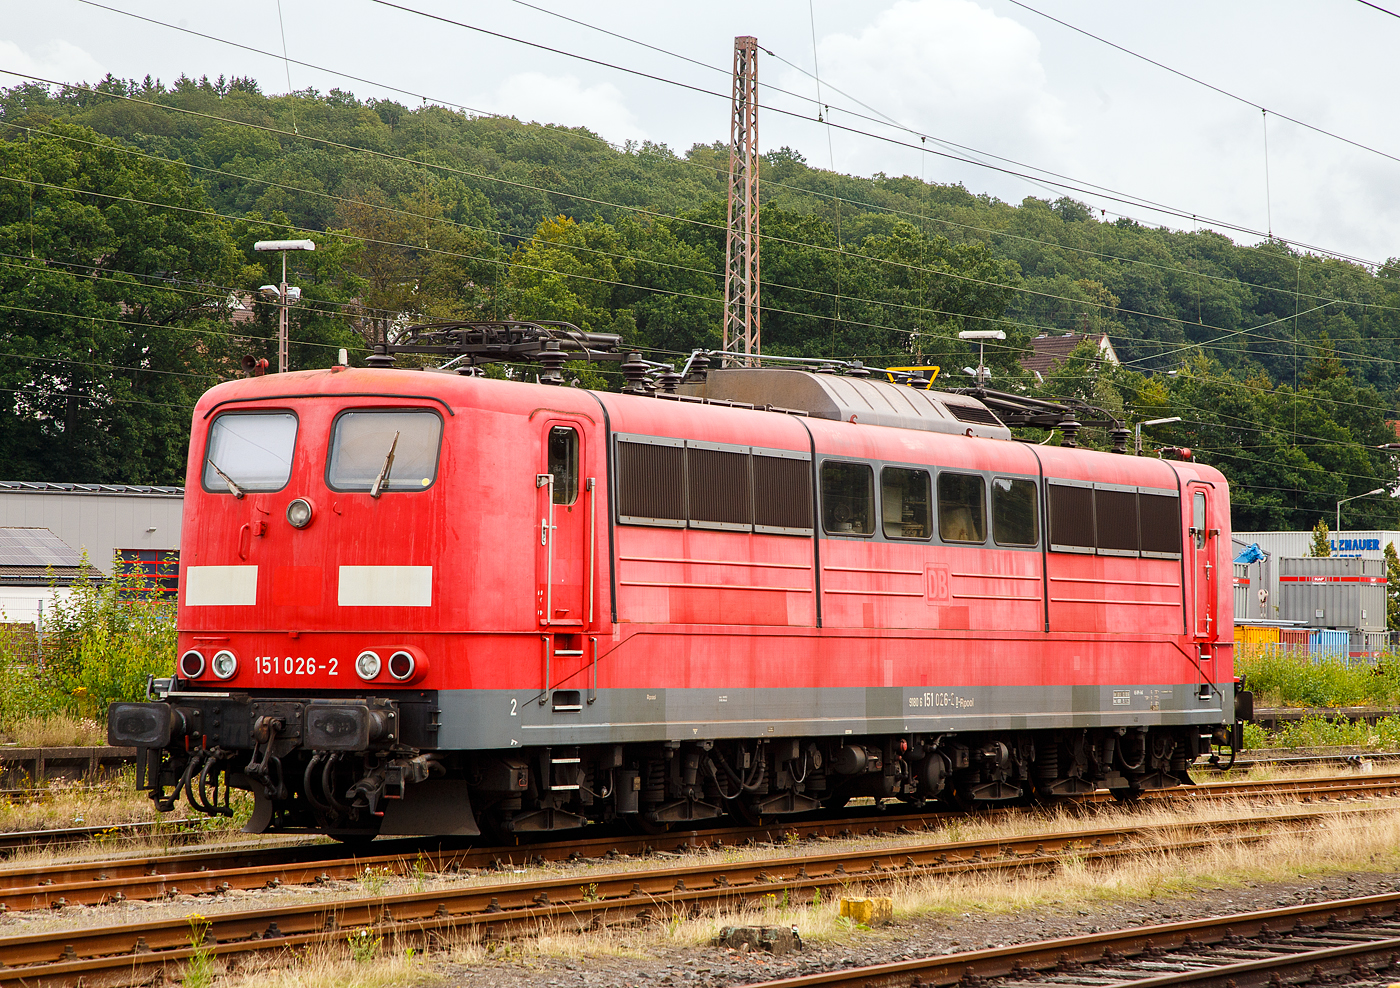 Die an die DB Cargo AG vermietete Railpool 151 026-2 (91 80 6151 026-2 D-Rpool) ist am 13.08.2023 im Kreuztaler Abstellbereich abgestellt.

Die Lok wurde 1973 von Krauss-Maffei AG in München unter der Fabriknummer 19645 gebaut, der elektrische Teil ist von Siemens. Bis zum 31.12.2016 gehörte sie zur DB Cargo AG. Zum 01.01.2017 wurden je 100 sechsachsige elektrische Altbau-Lokomotiven der Baureihen 151 und 155 an Railpool verkauft. Die DB Cargo mietet daraufhin 100 Loks von Railpool wieder an. Die anderen Maschinen werden dem freien Markt angeboten.